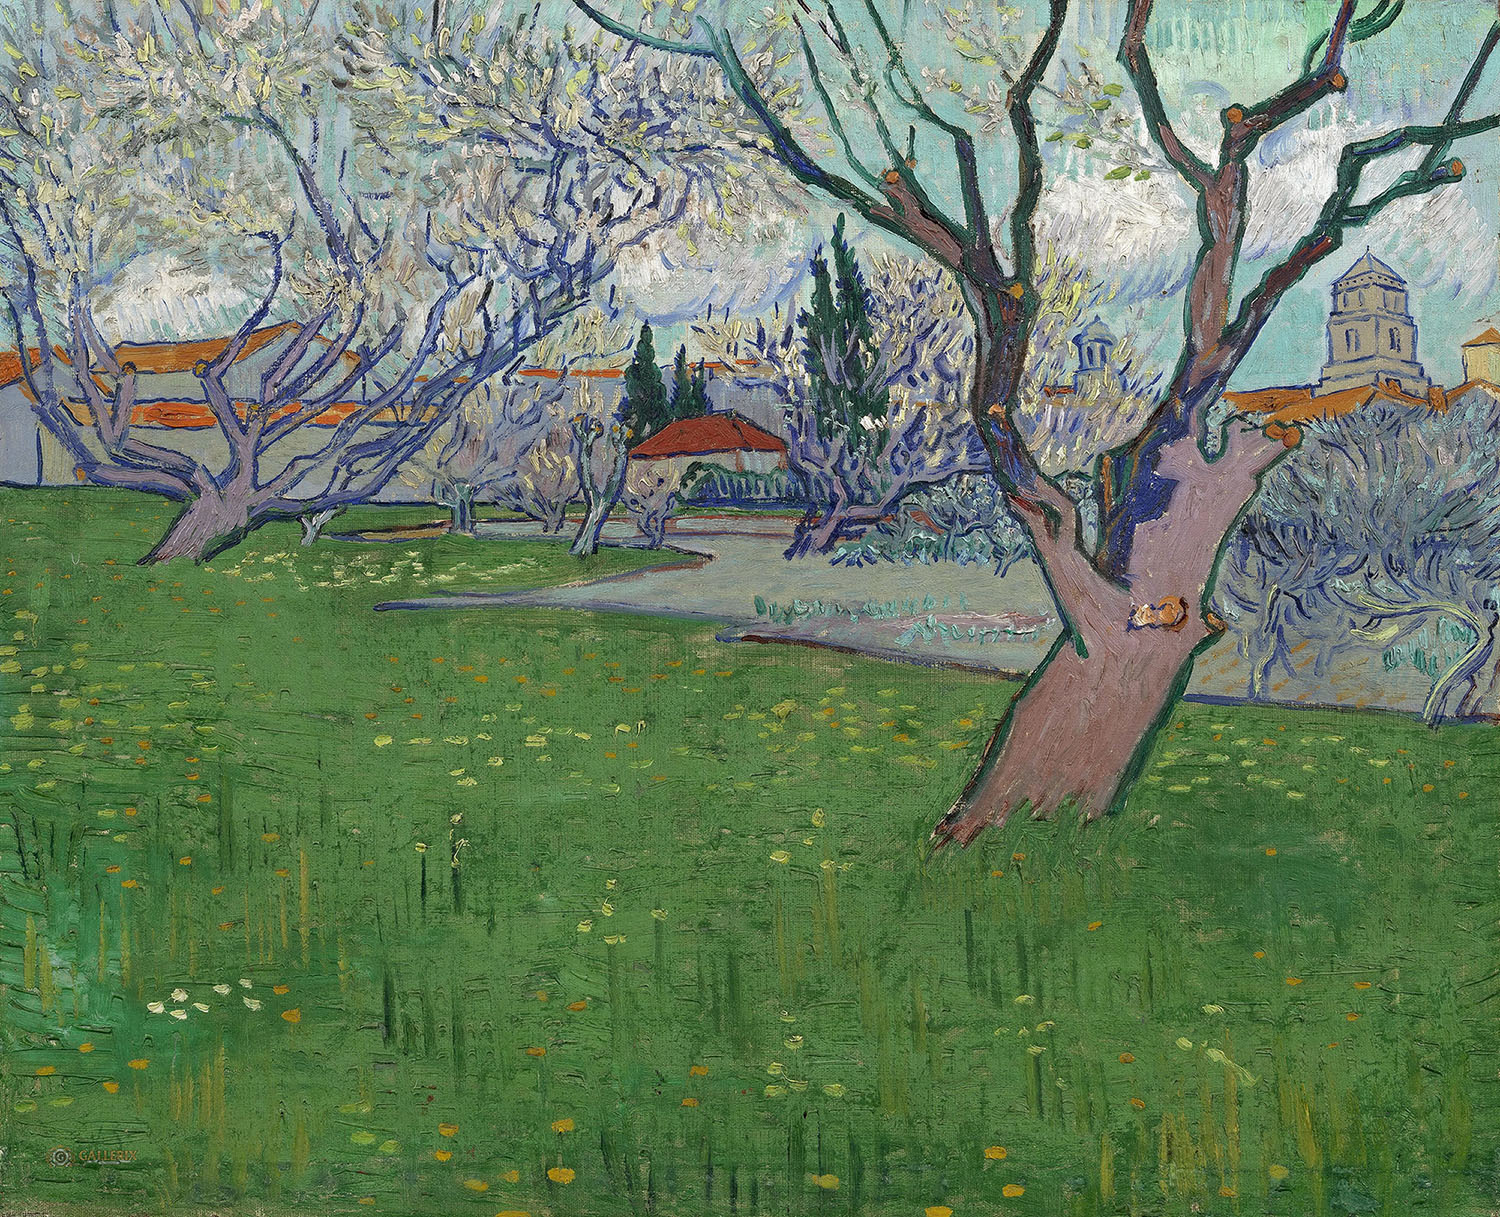 Винсент Ван Гог. "Вид Арля с цветущими деревьями". 1889.